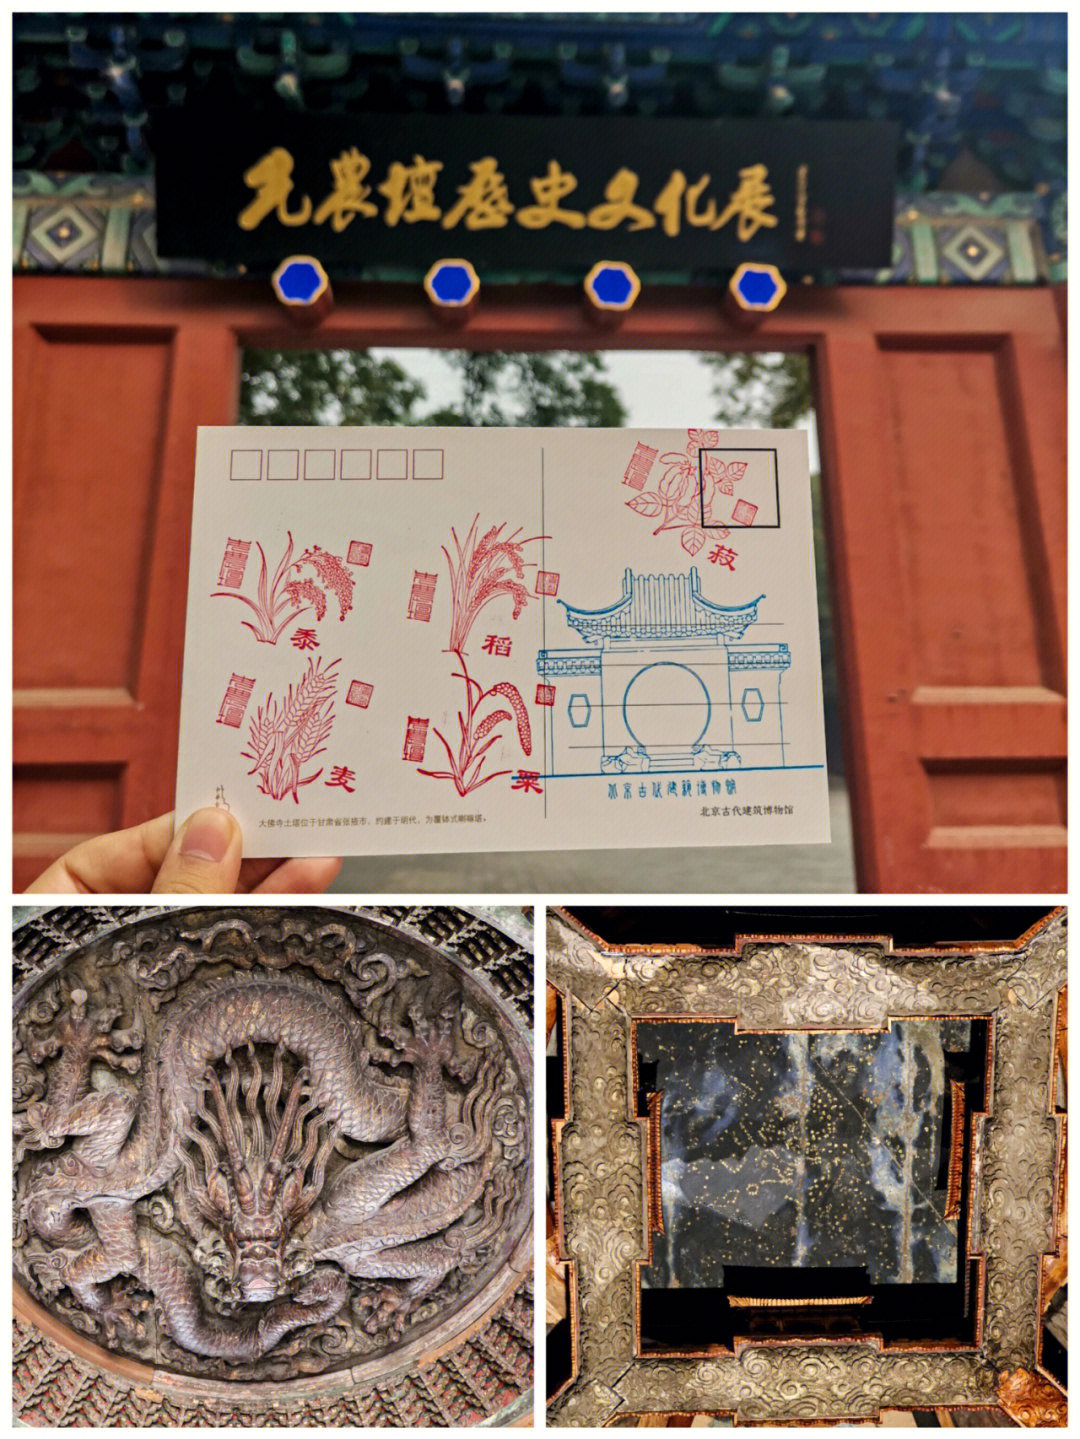 北京古代建筑博物馆先农坛61国宝藻井